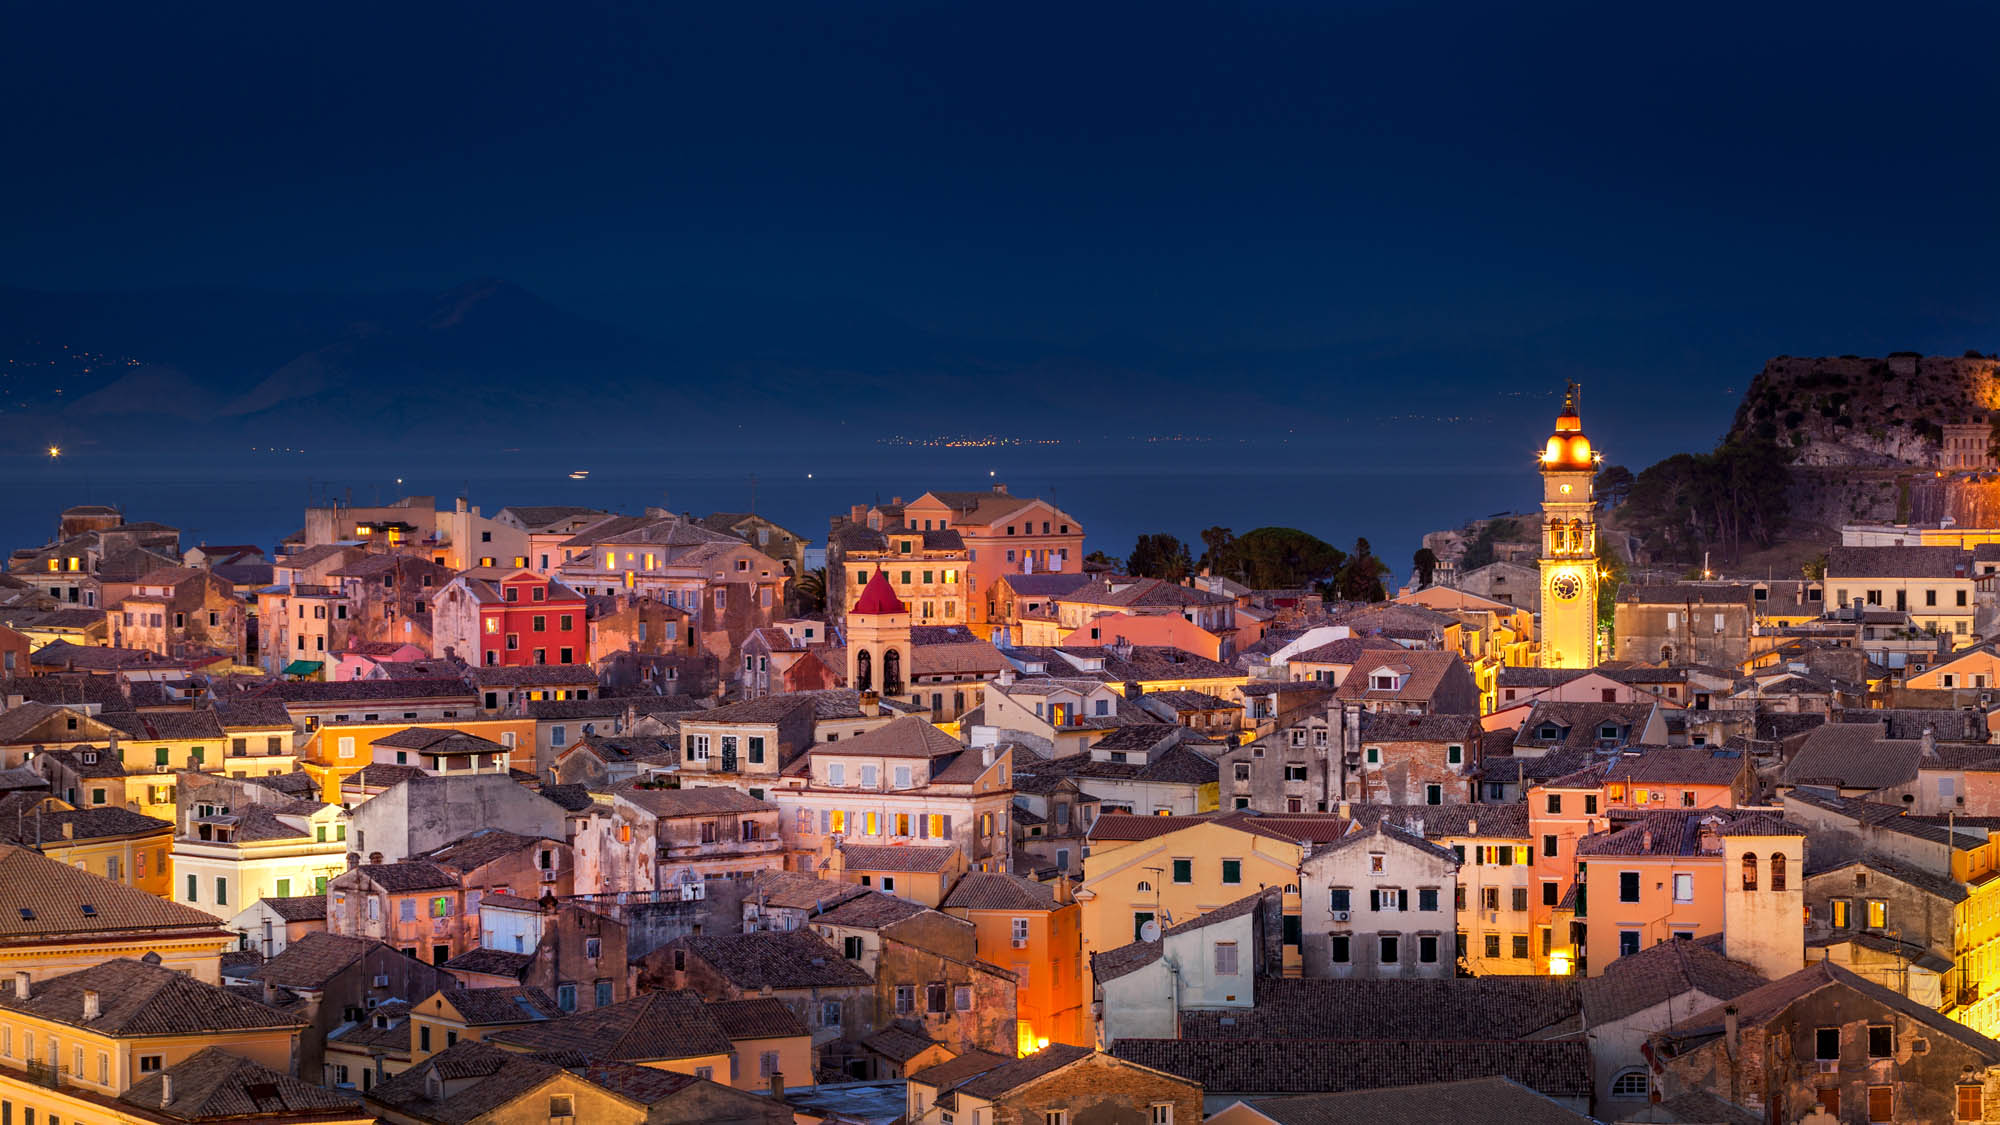 stolica Korfu, panorama miasta nocą, kolorowe budynki i charakterystyczna wieża